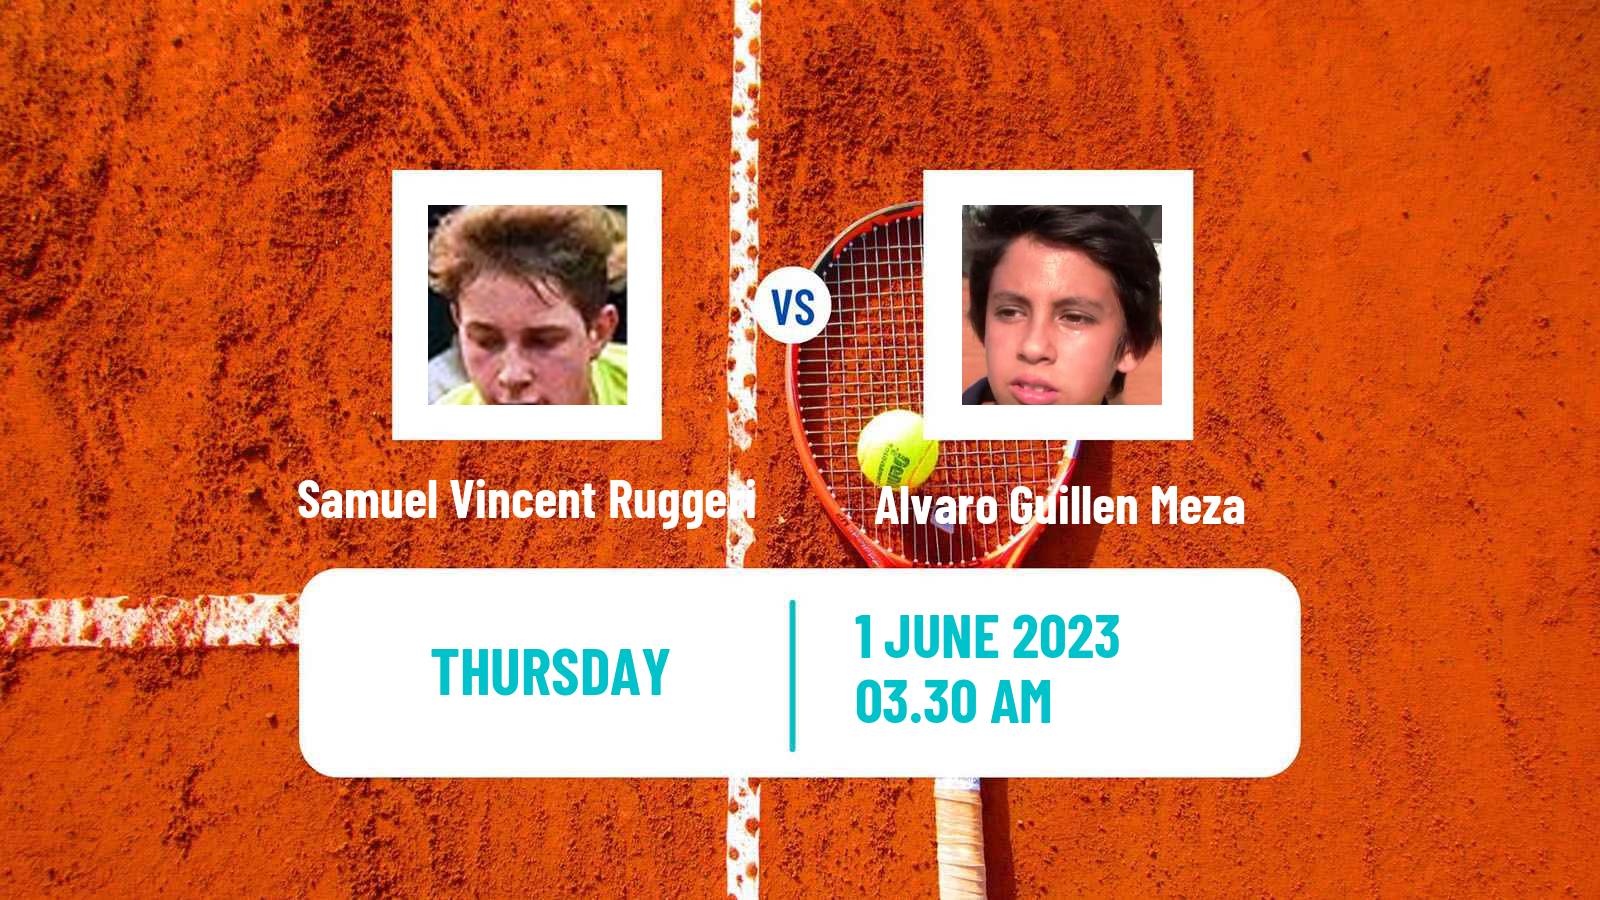 Tennis ITF M15 Kursumlijska Banja 4 Men Samuel Vincent Ruggeri - Alvaro Guillen Meza